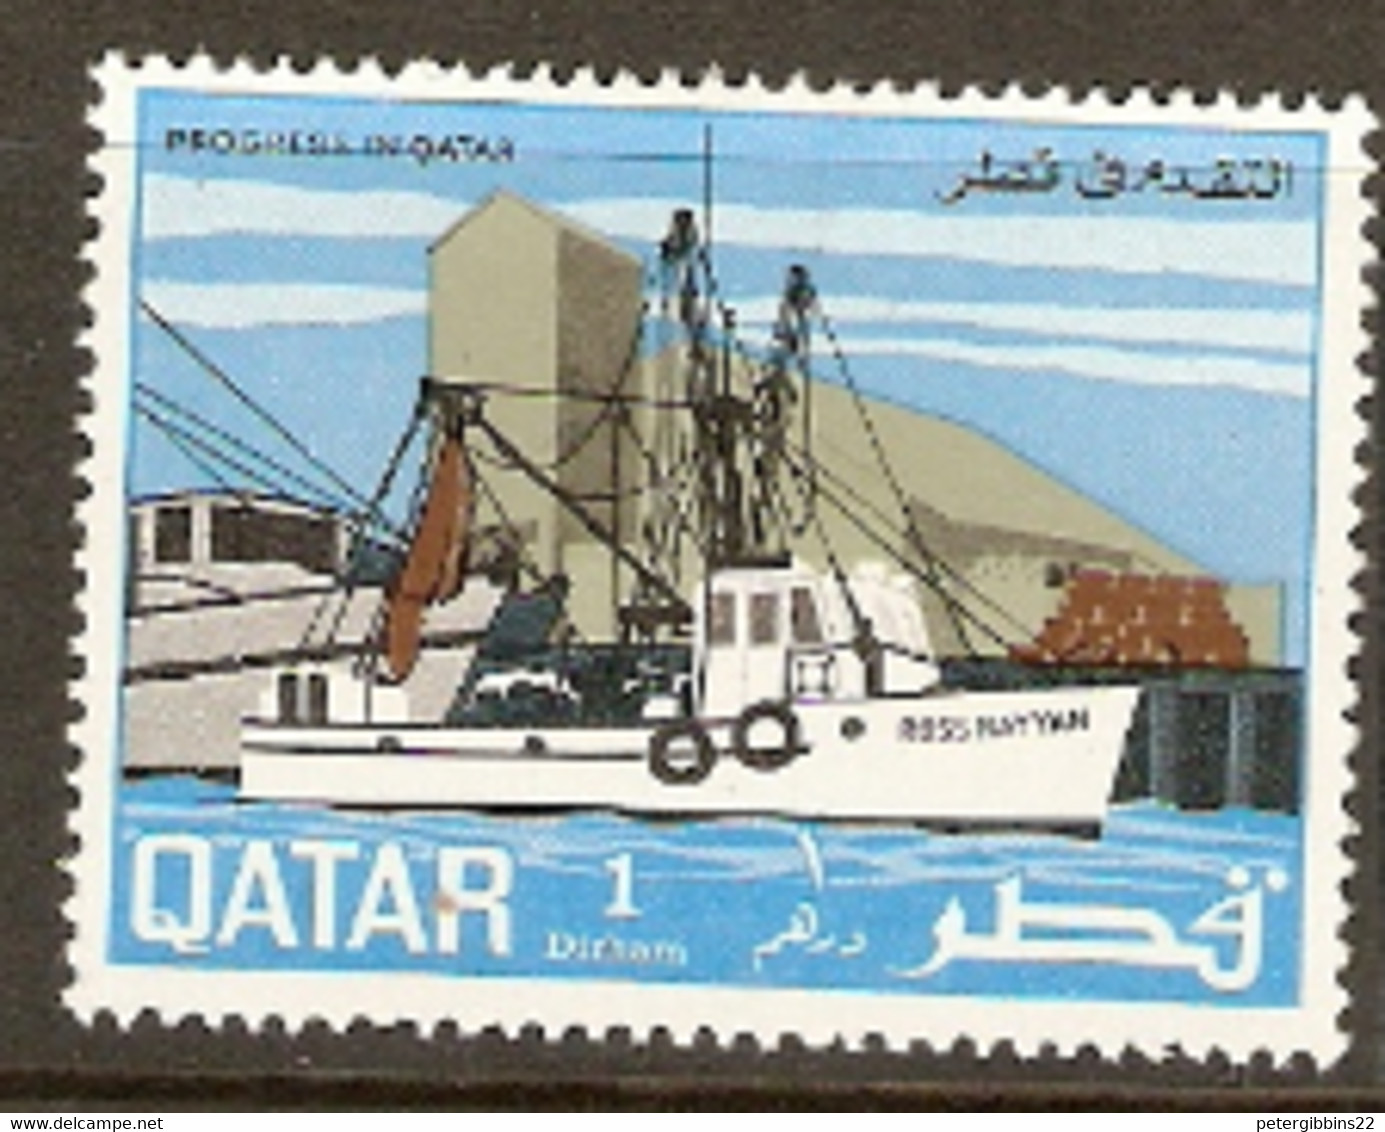 Qatar  1969  SG  276  Trawler   Mounted Mint - Qatar